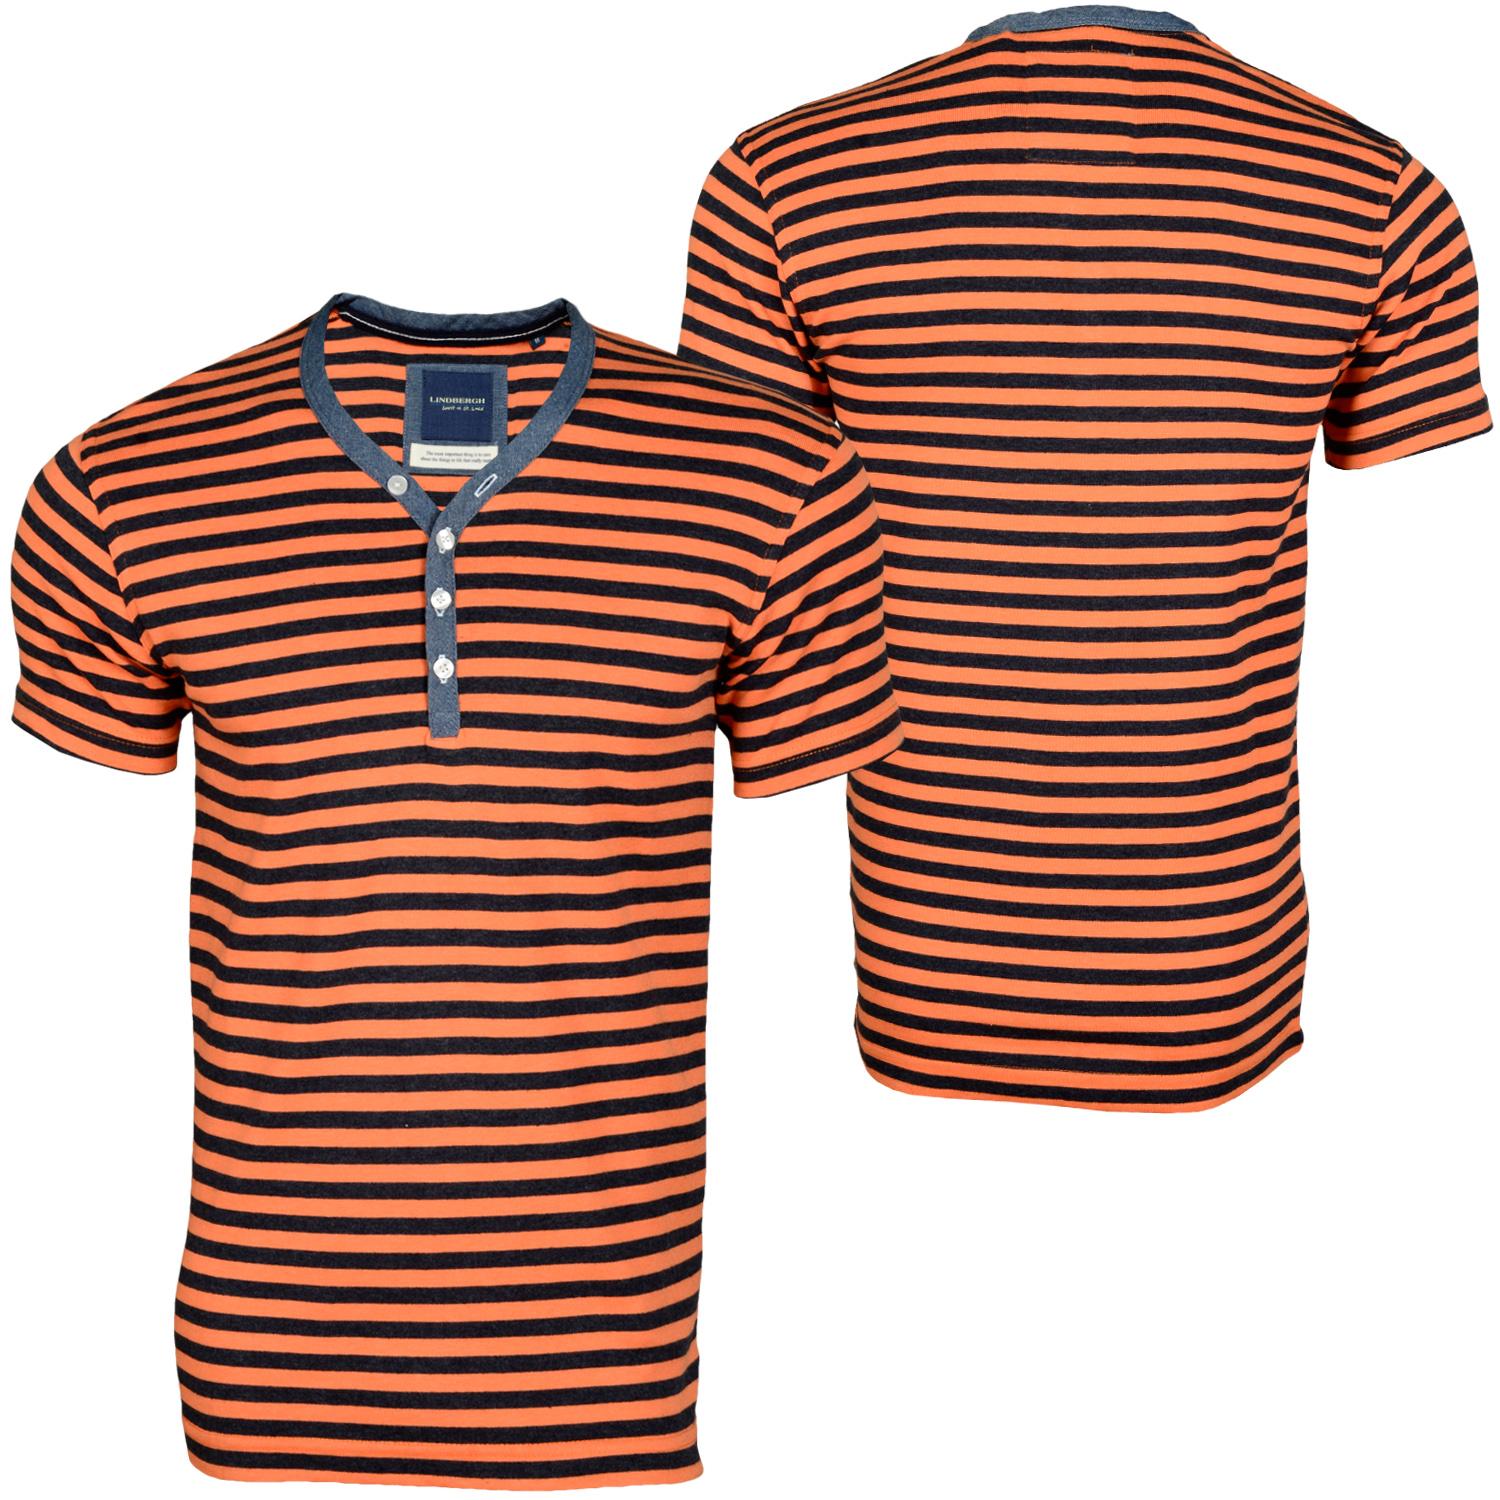 Foto Lindbergh Granddad Stripe Hombres T-shirt Naranja De Color Azul Oscuro